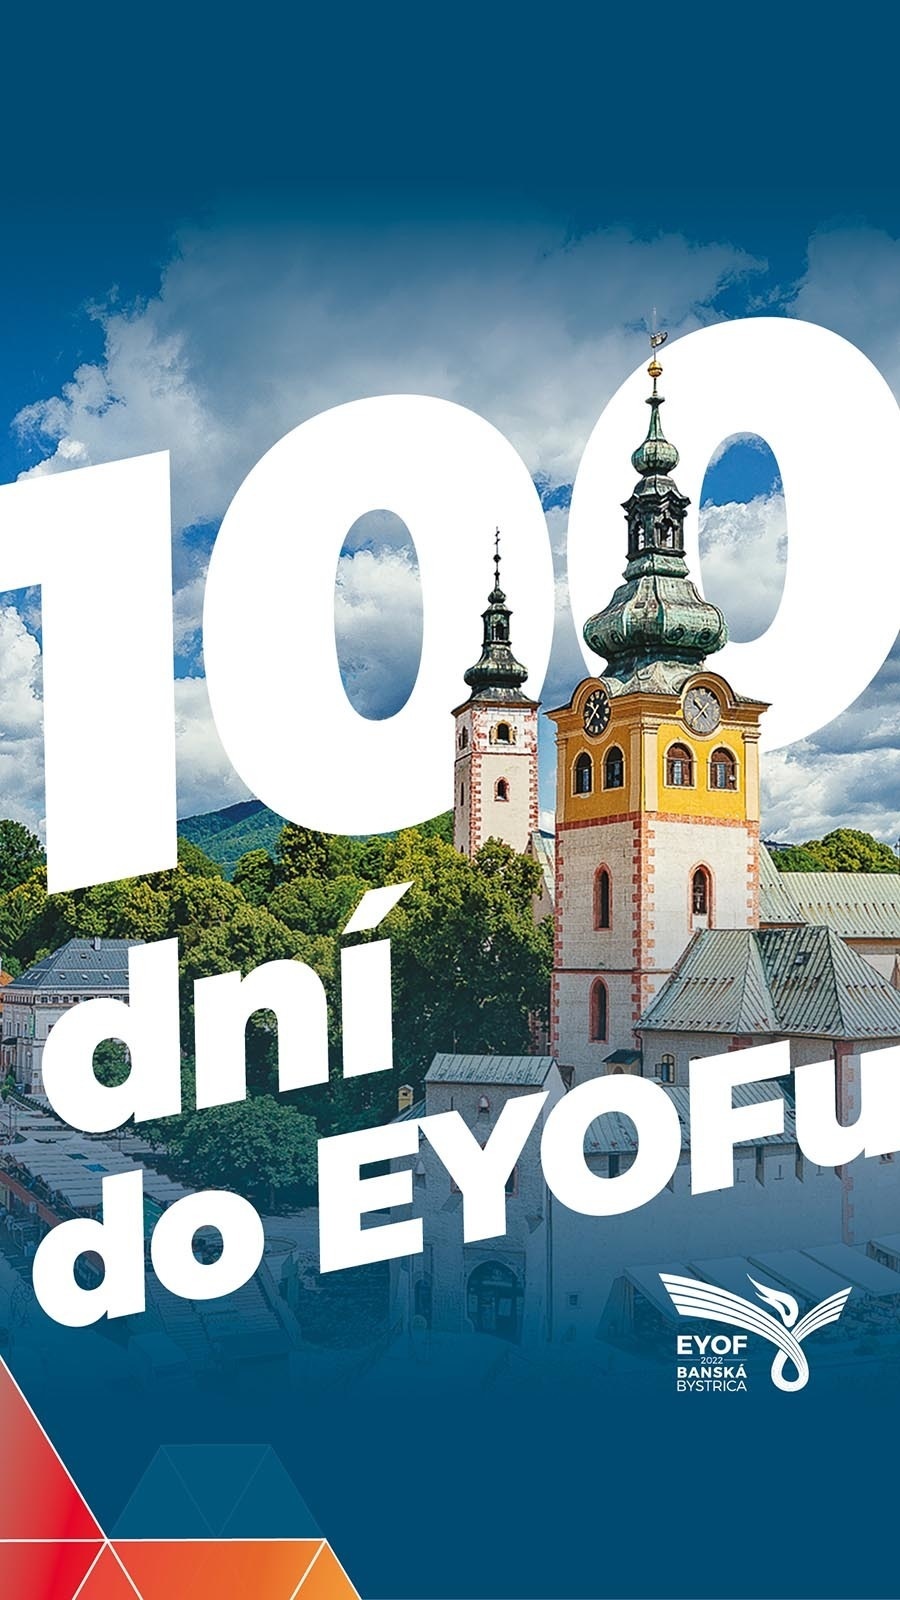 100 dní do začiatku EYOF 2022 Banská Bystrica.